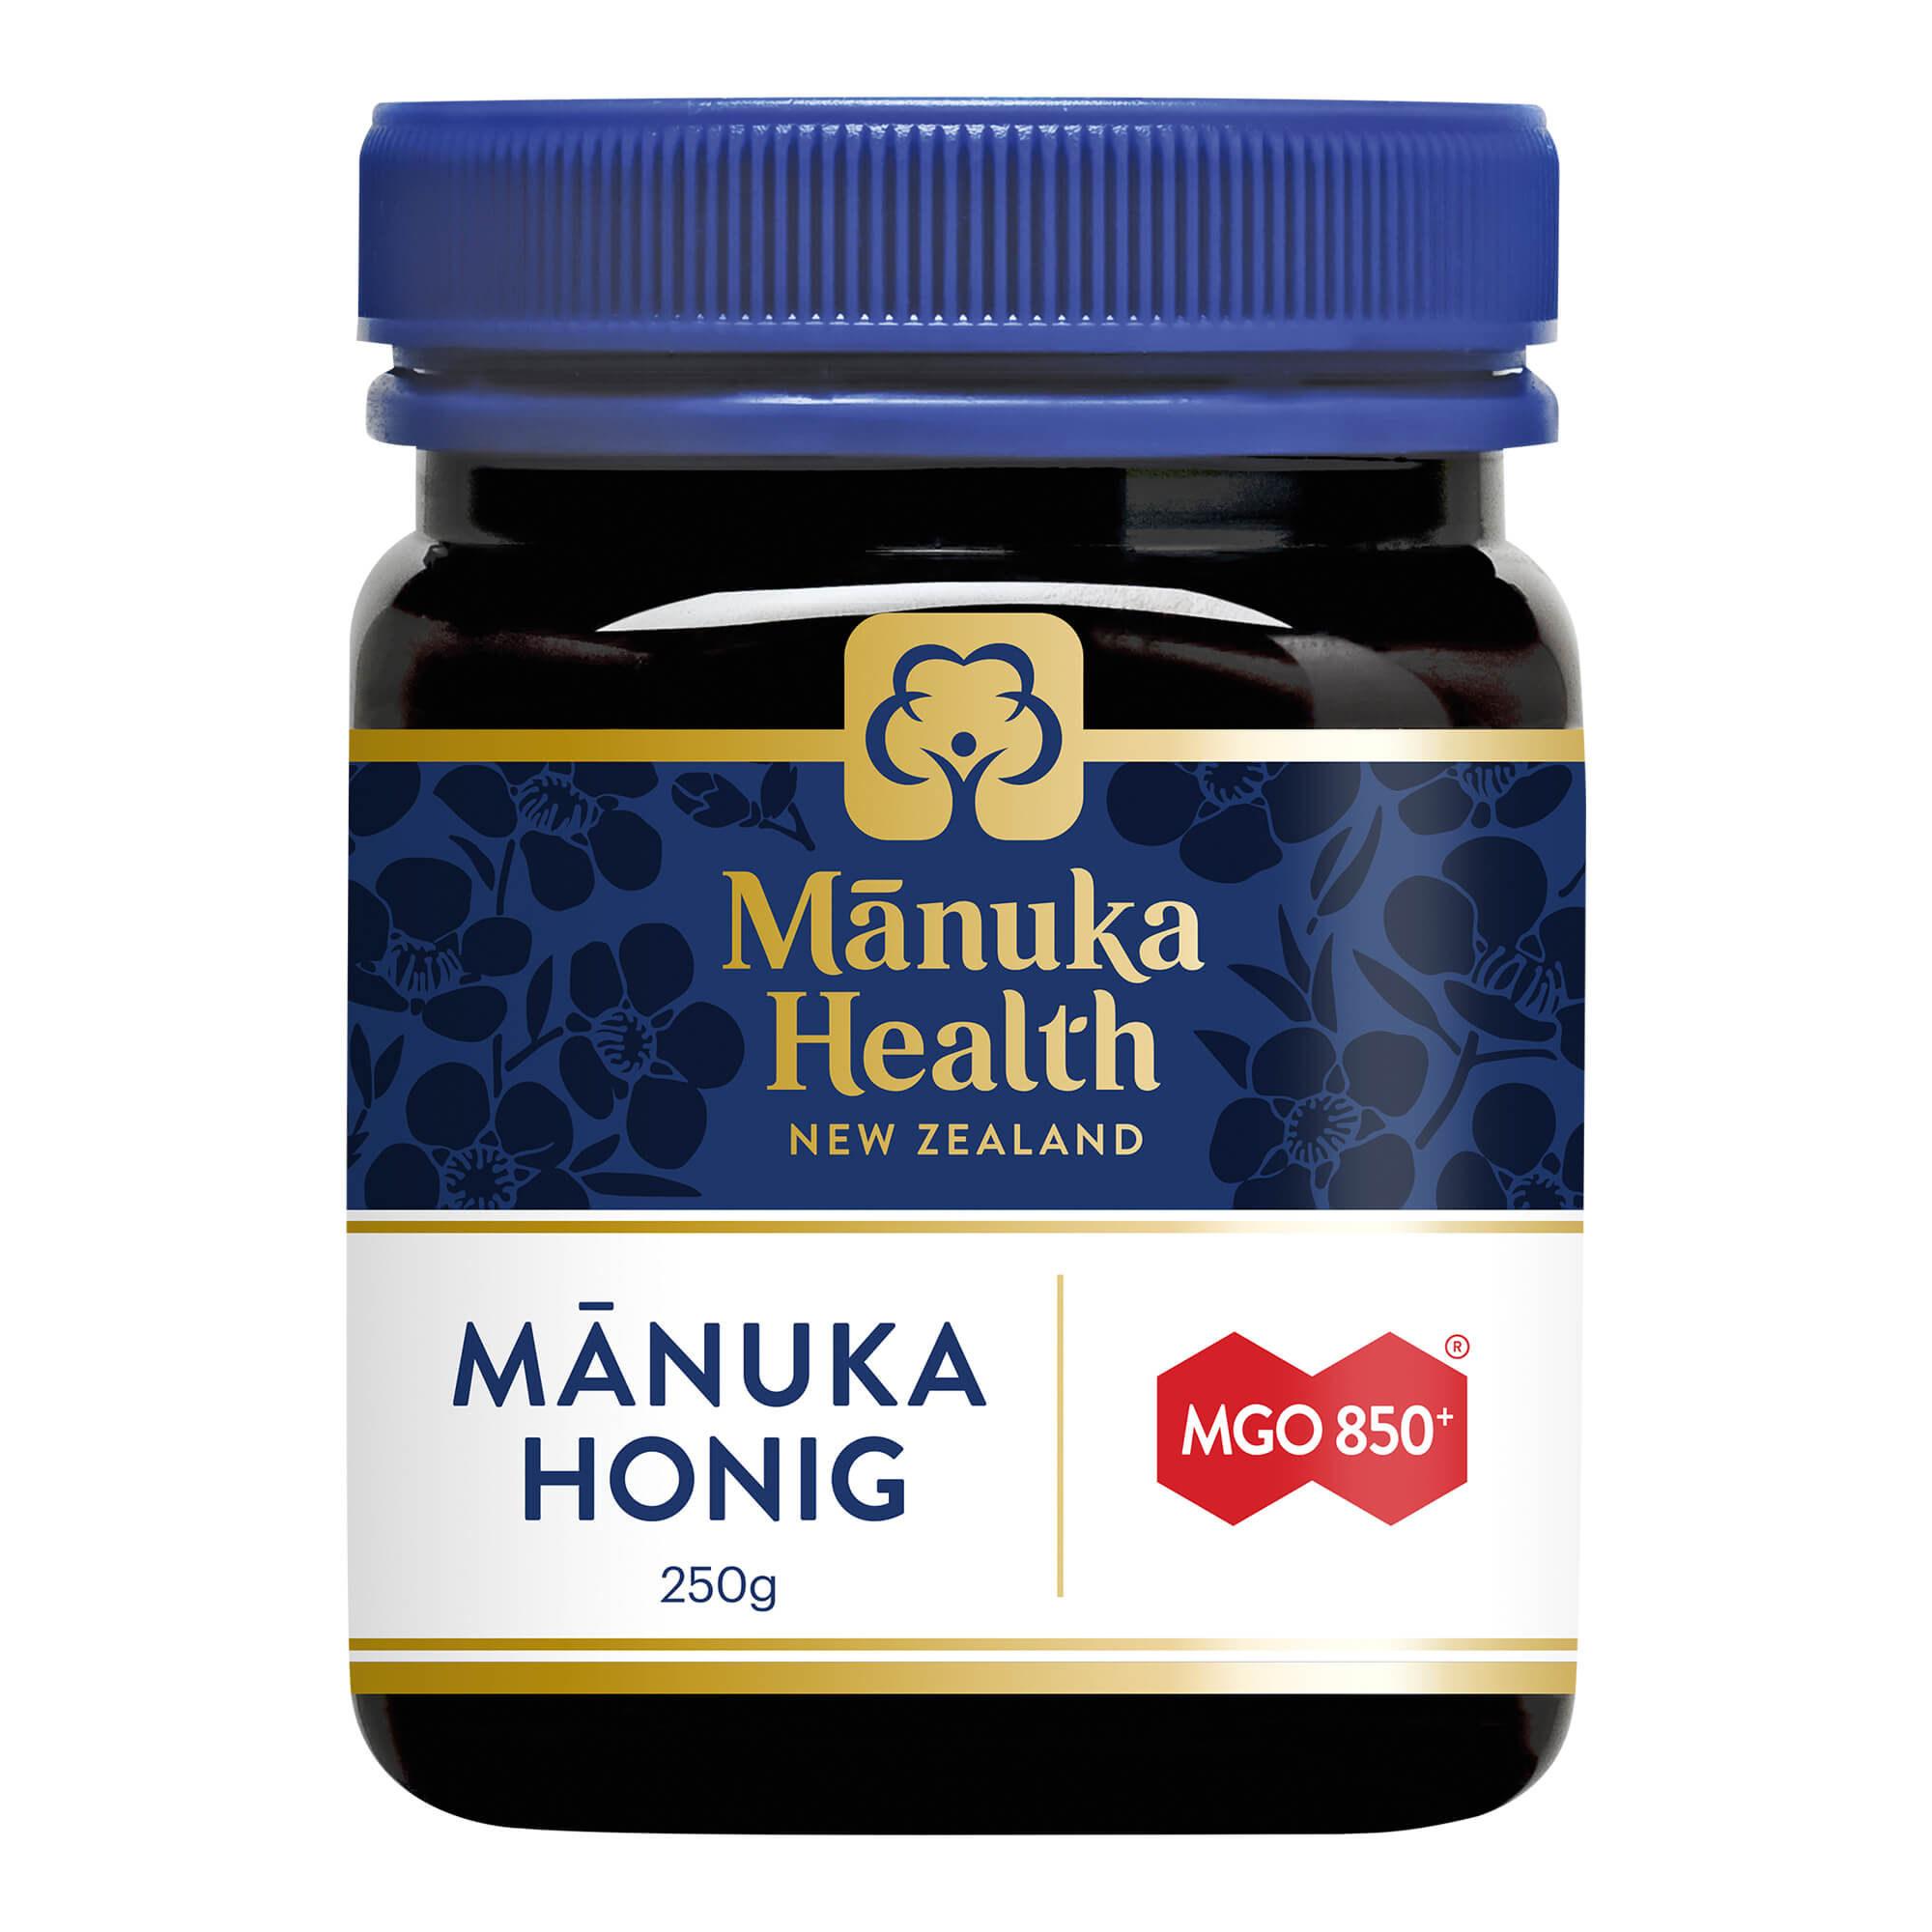 Manuka Honig zur Stärkung des allgemeinen Wohlbefindens. Mit Gehalt von mindestens 850 mg MGO.